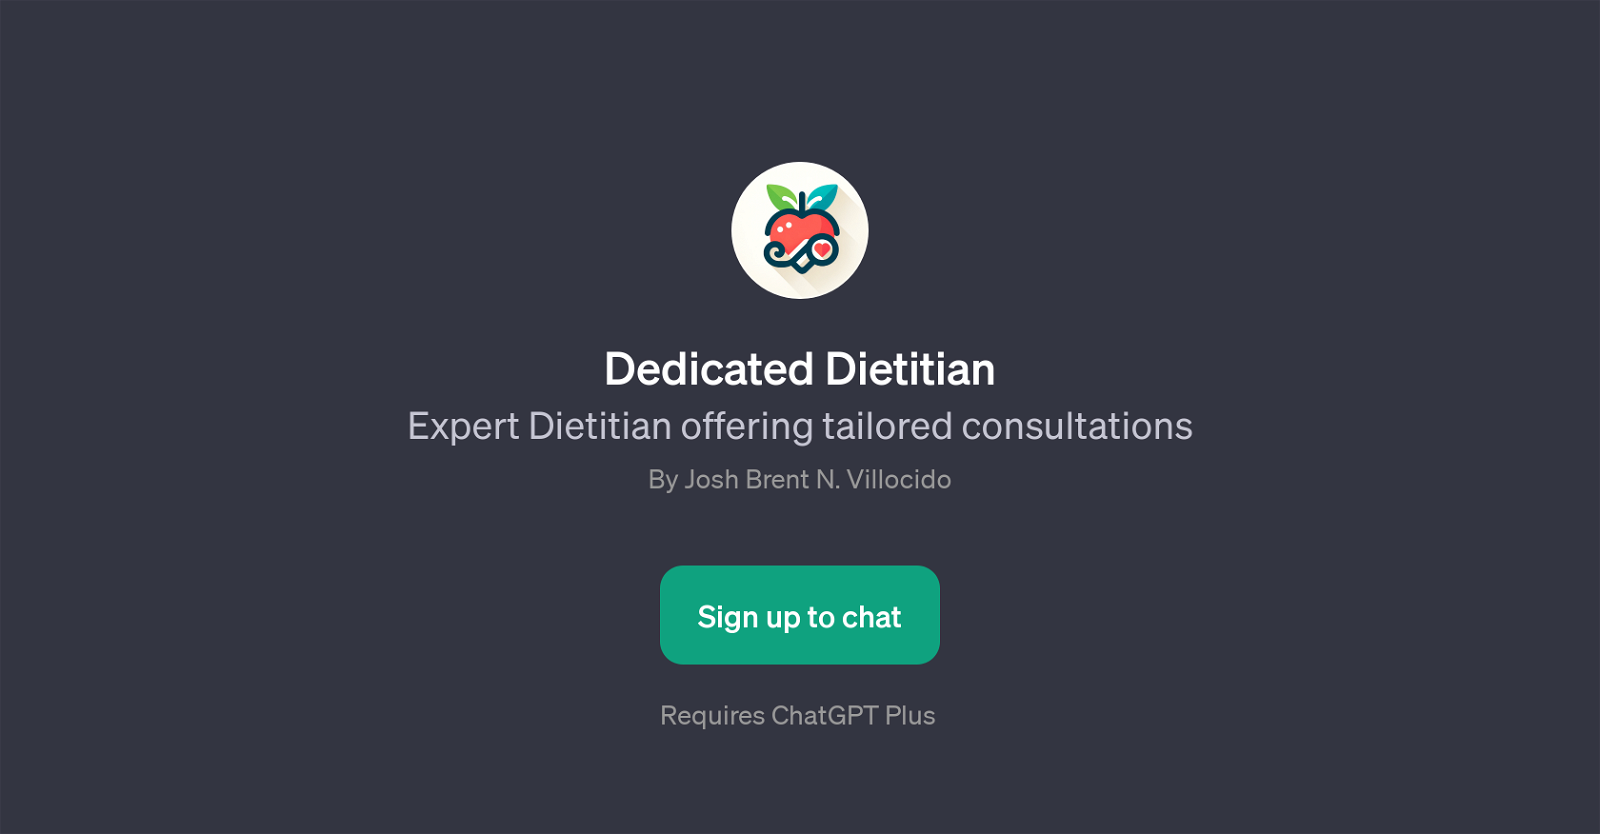 Dedicated Dietitian website